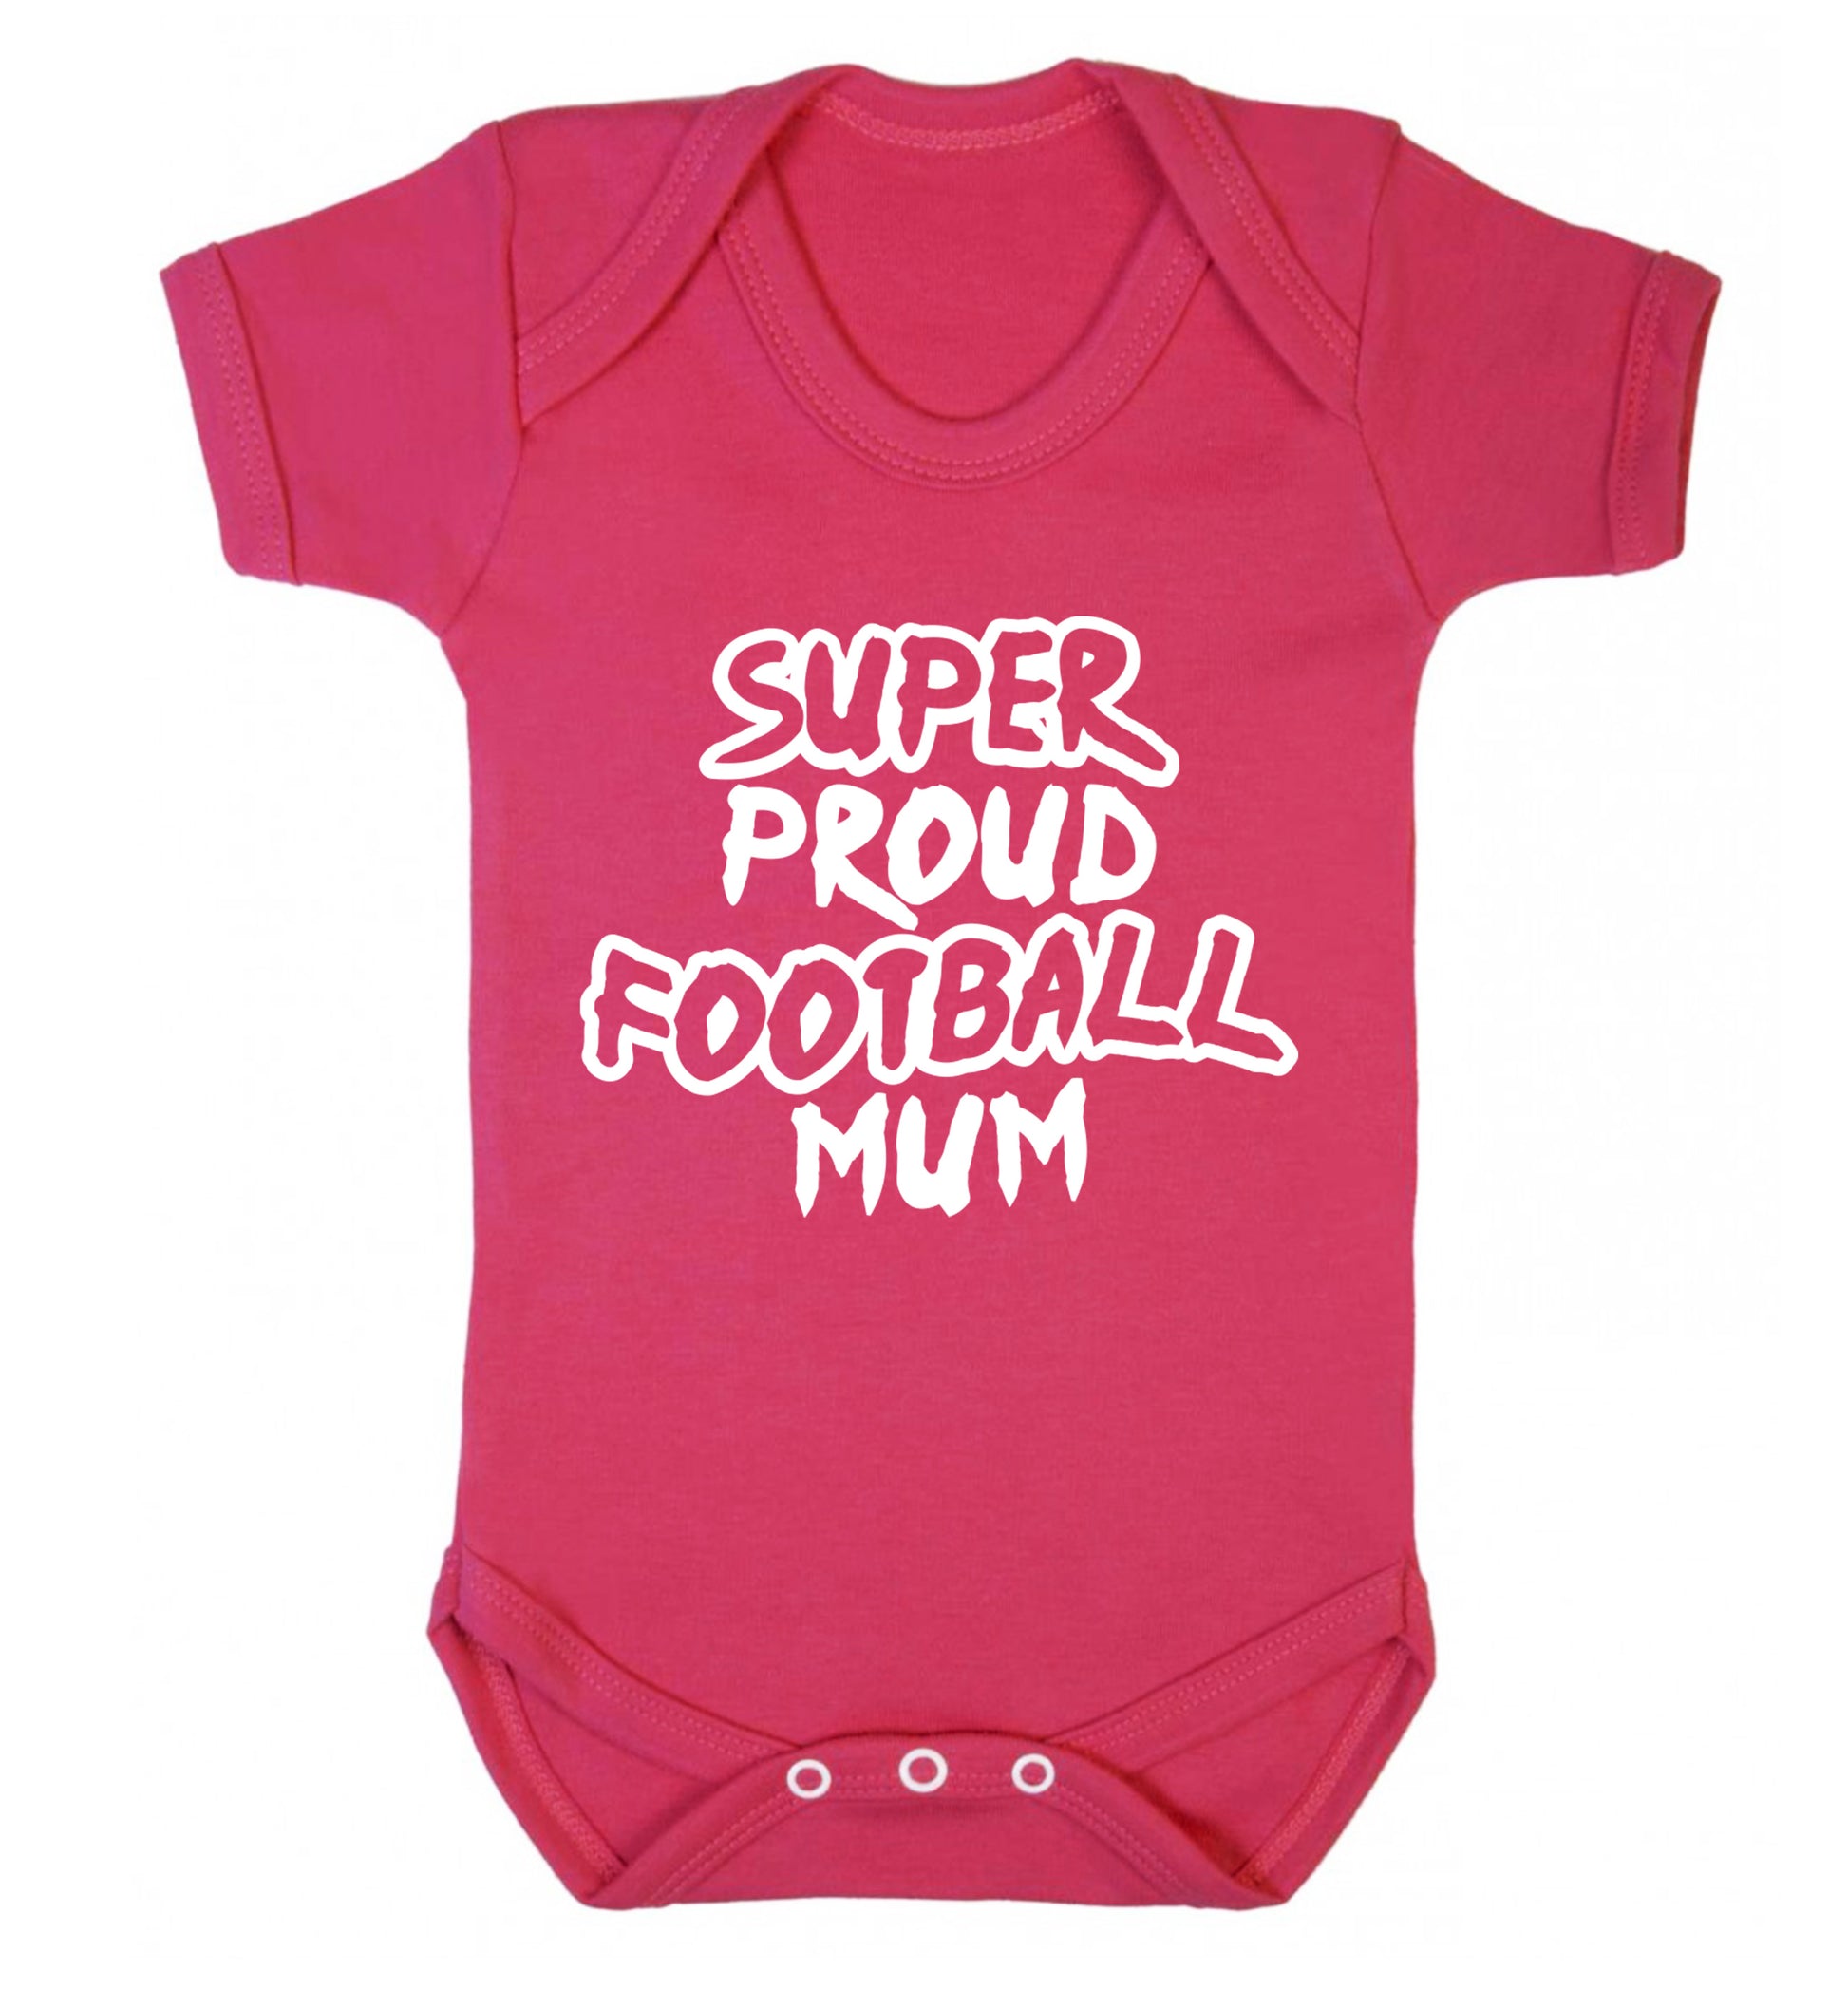 Super proud football mum Baby Vest dark pink 18-24 months